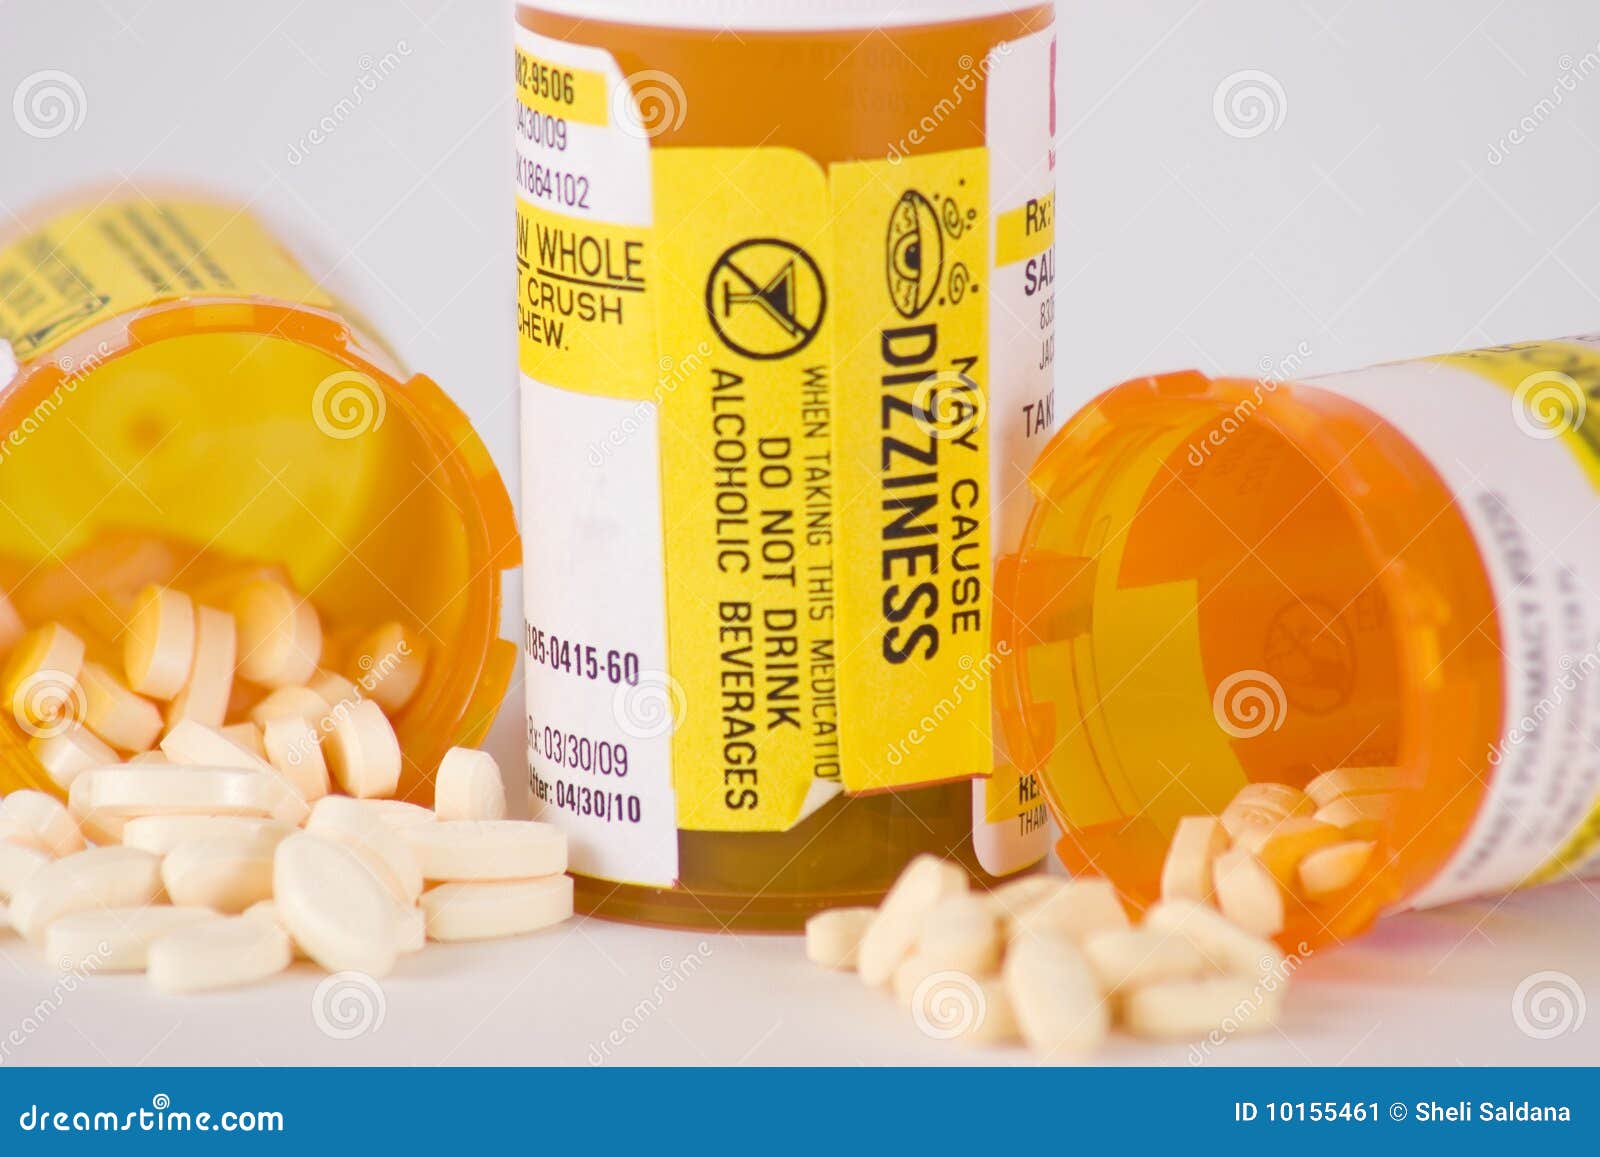 prescription medication pill bottles 6